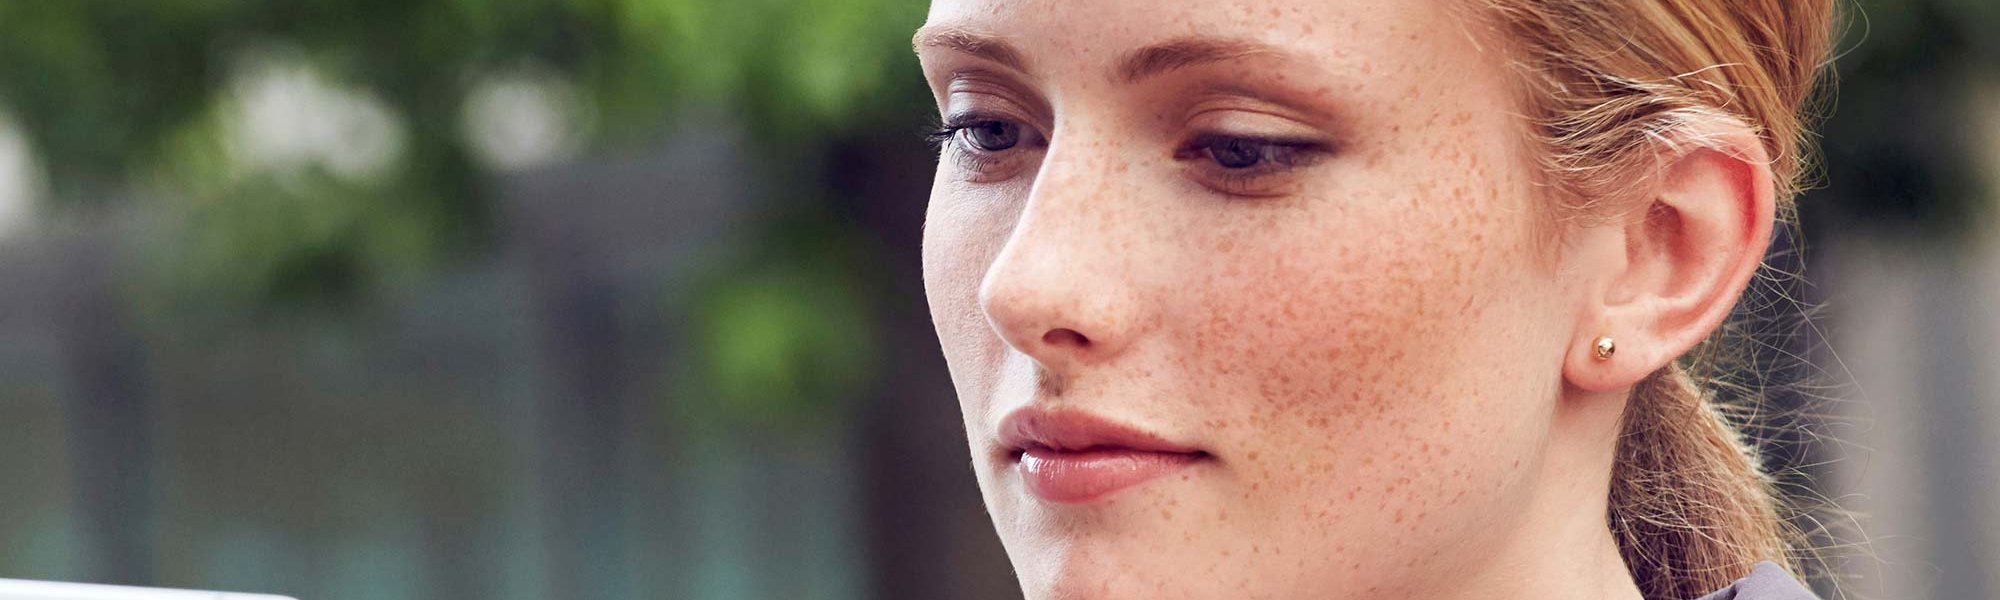 Consigue una piel sana con estos consejos y los productos de cuidado facial de la gama Revitalift Clásico de L’Oréal Paris.